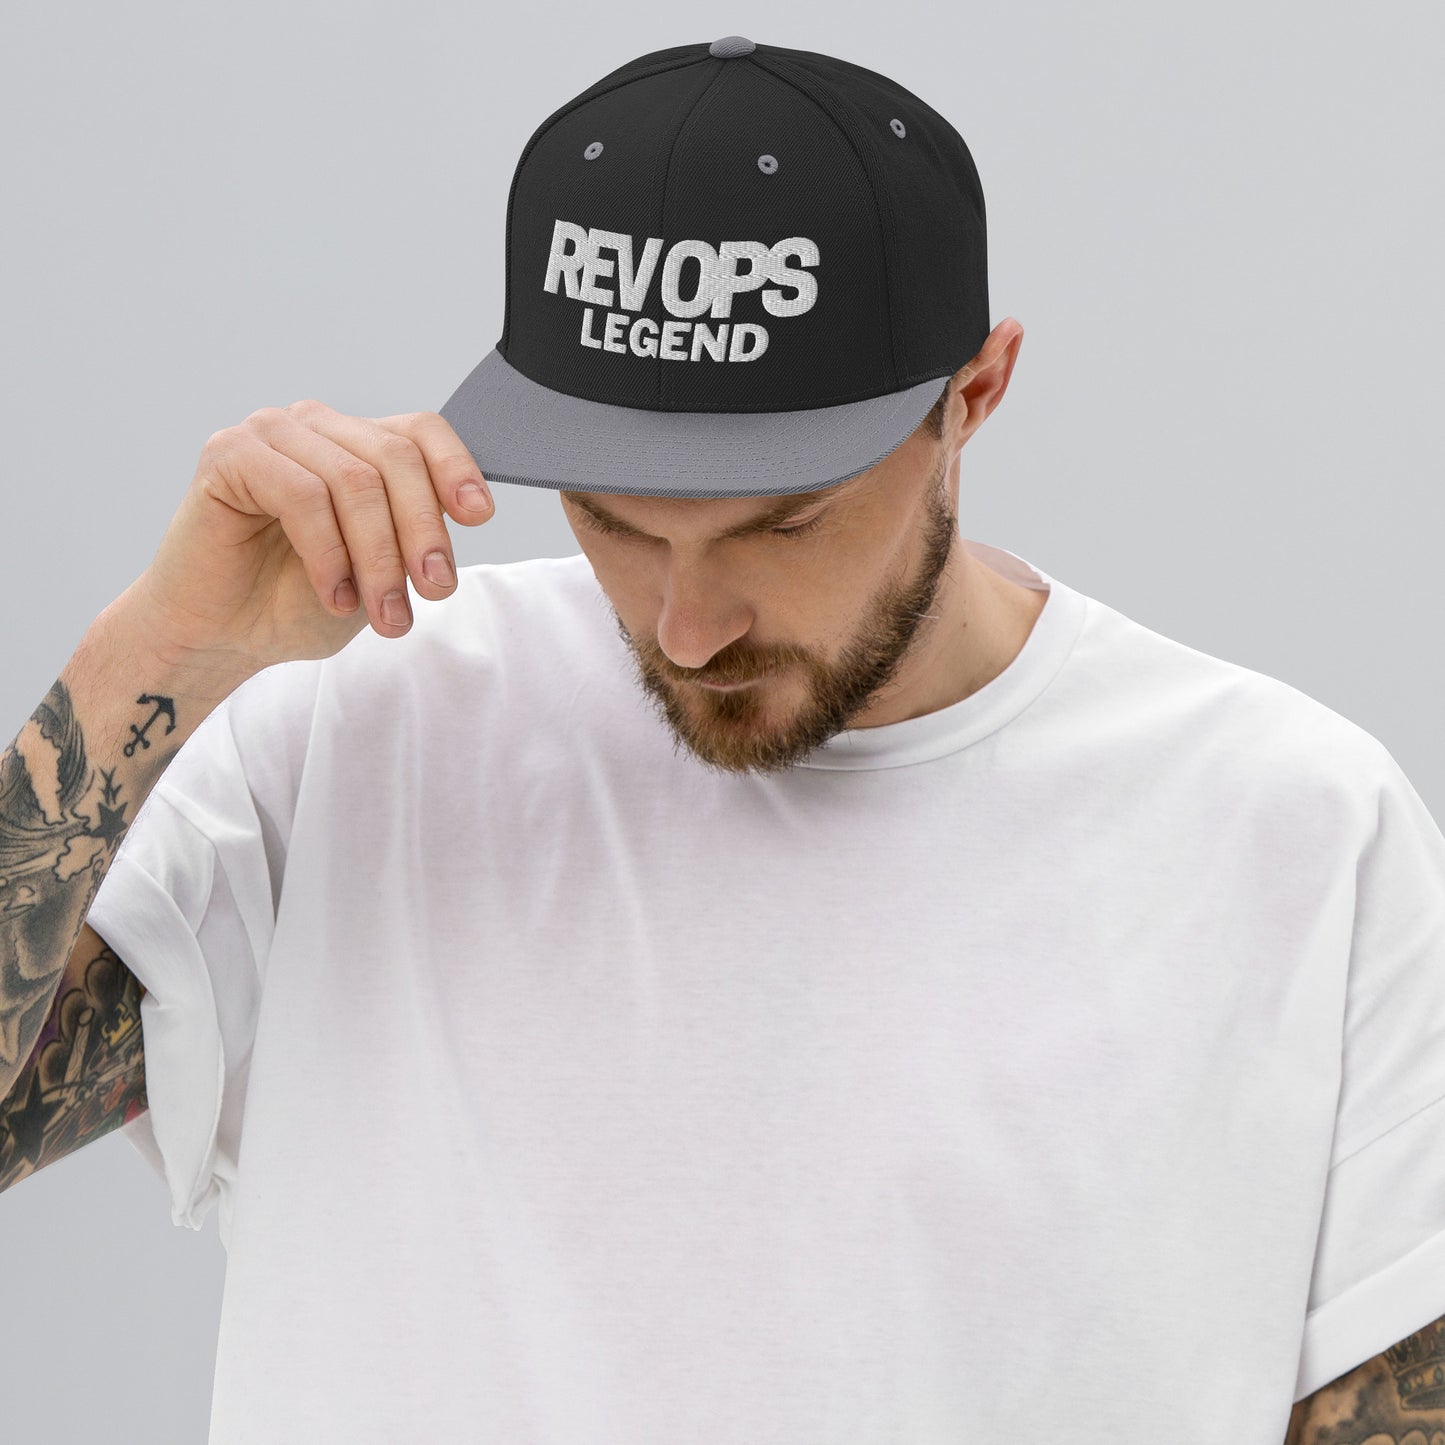 Rev Ops Legend Snapback Hat